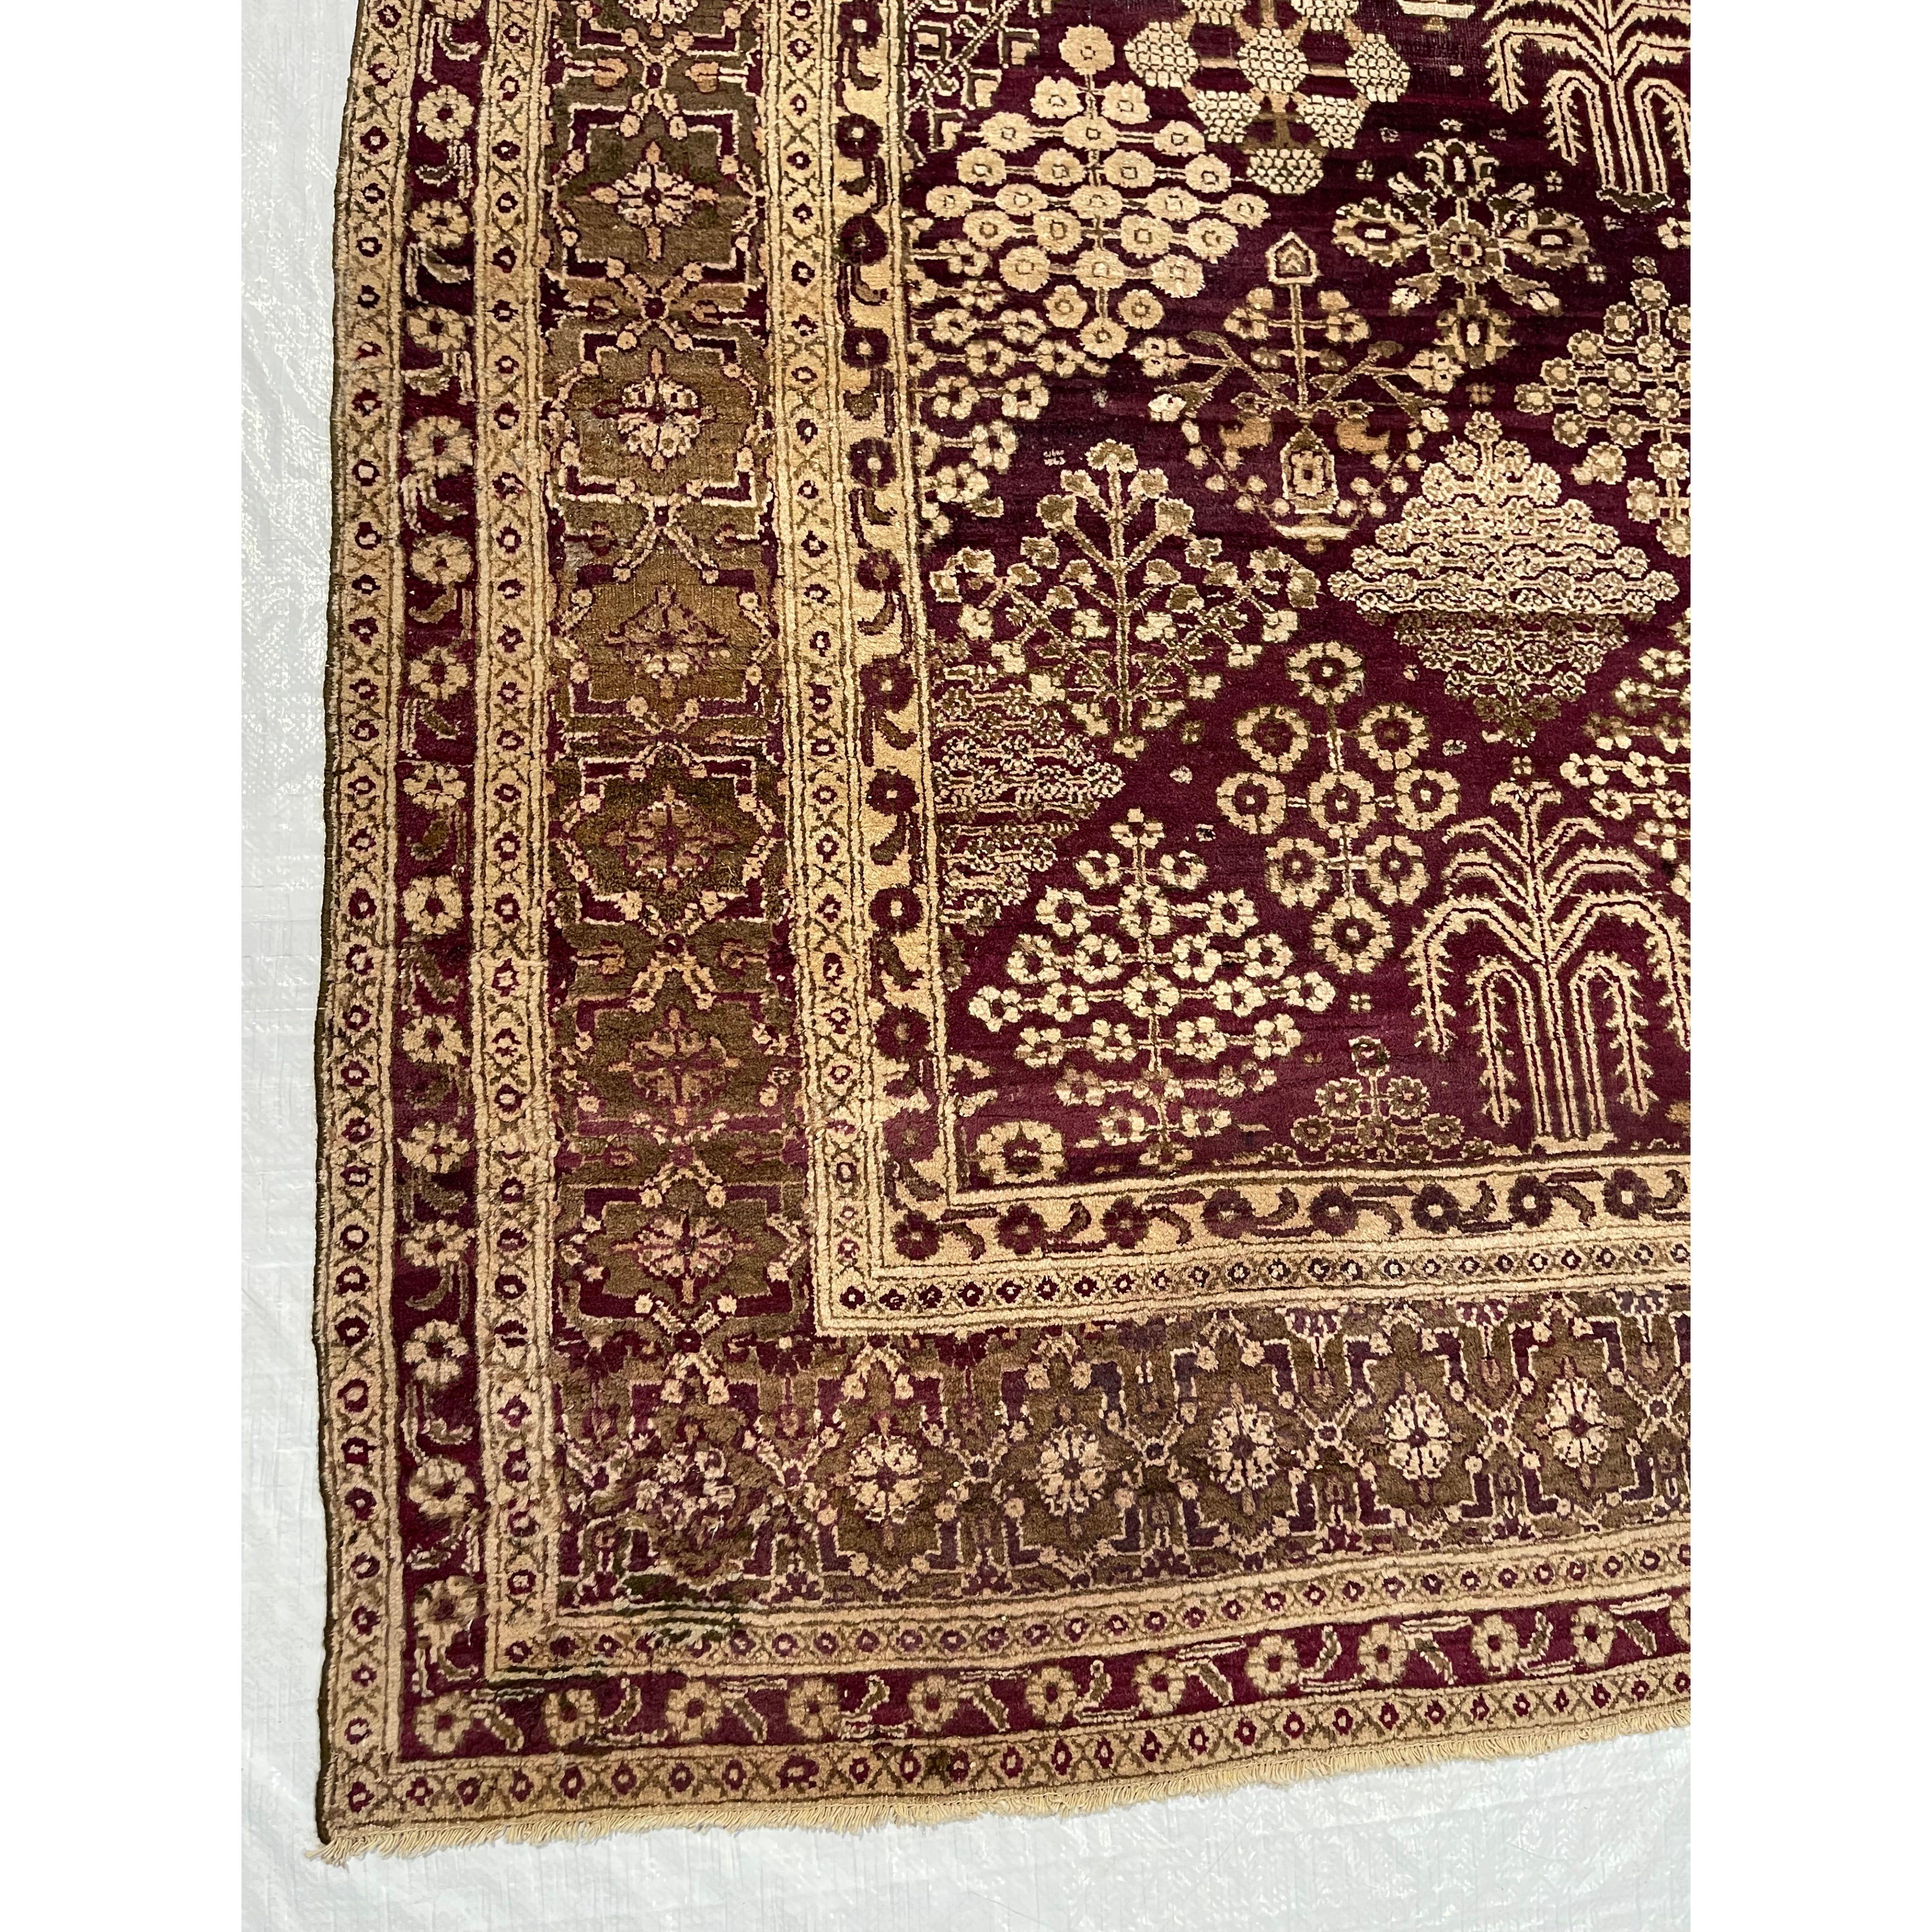 Tapis indiens anciens - Les tapis tissés en Inde ne sont pas tous faciles à classer. C'est pourquoi nous avons créé cette section de tapis indiens anciens. Vous trouverez ici des tapis indiens dont la ville d'origine n'est pas spécifiquement